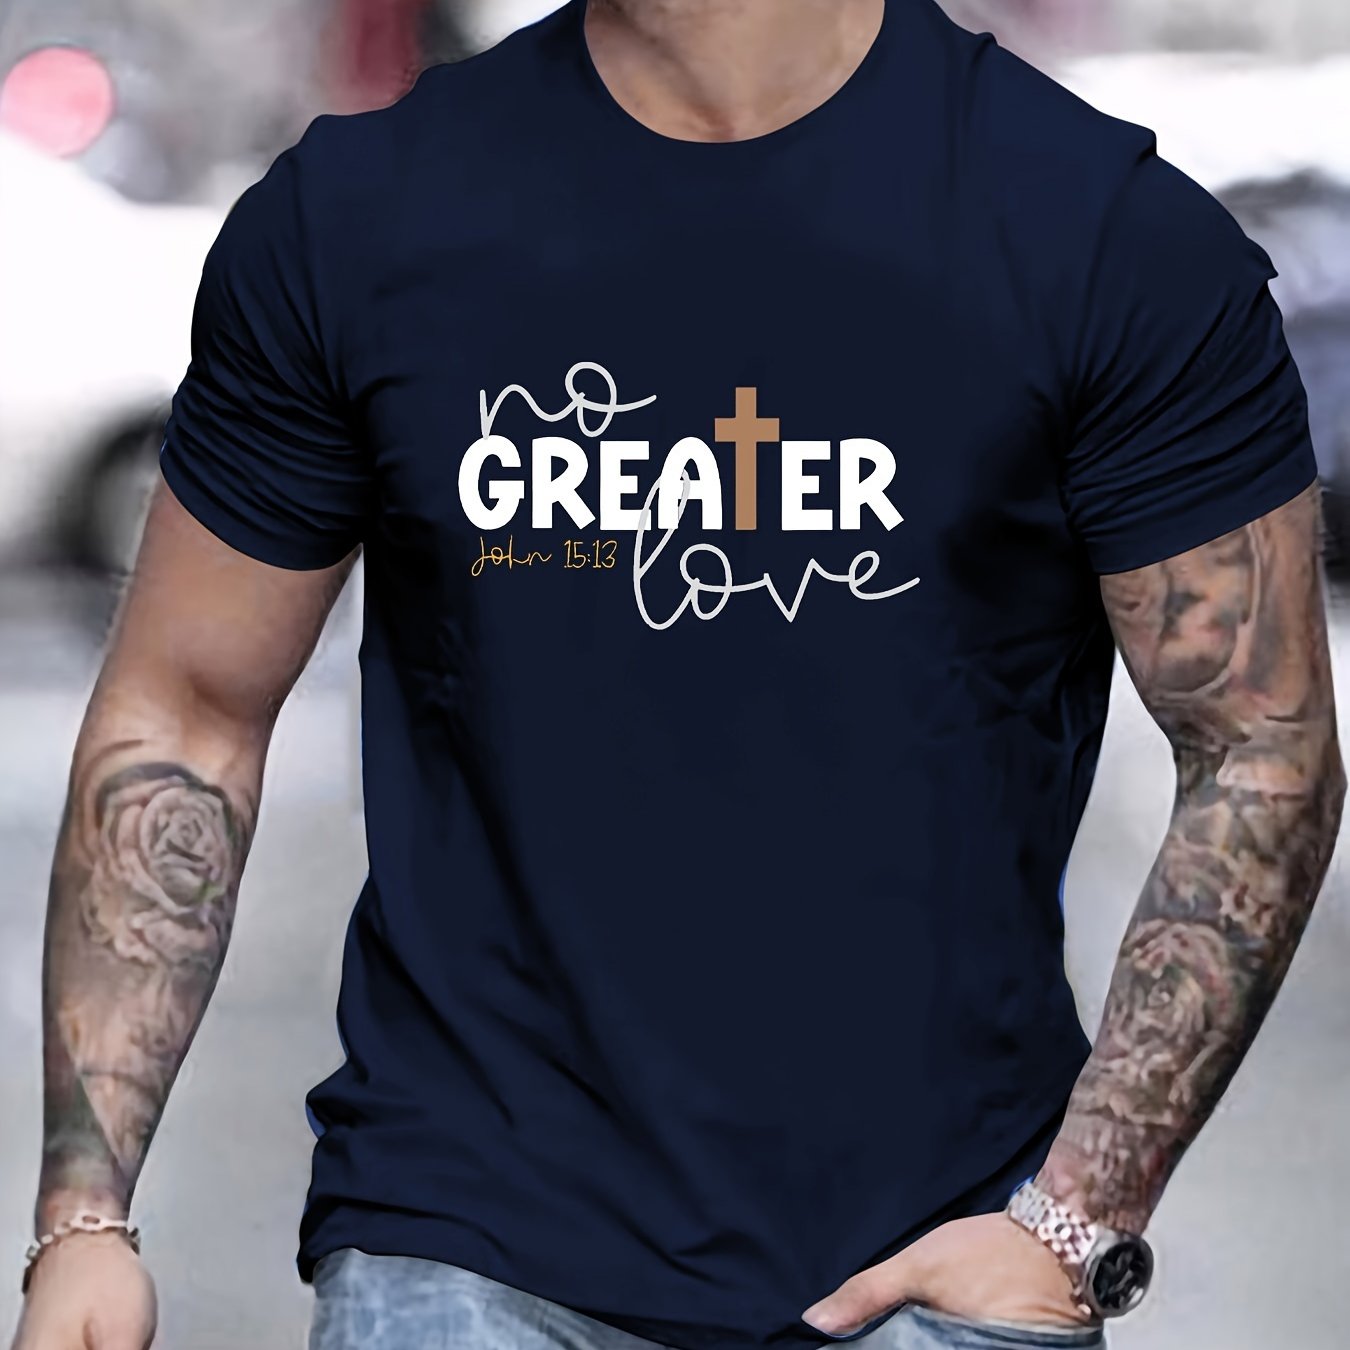 John 15:13 NO GREATER LOVE Men's Christian T-shirt claimedbygoddesigns